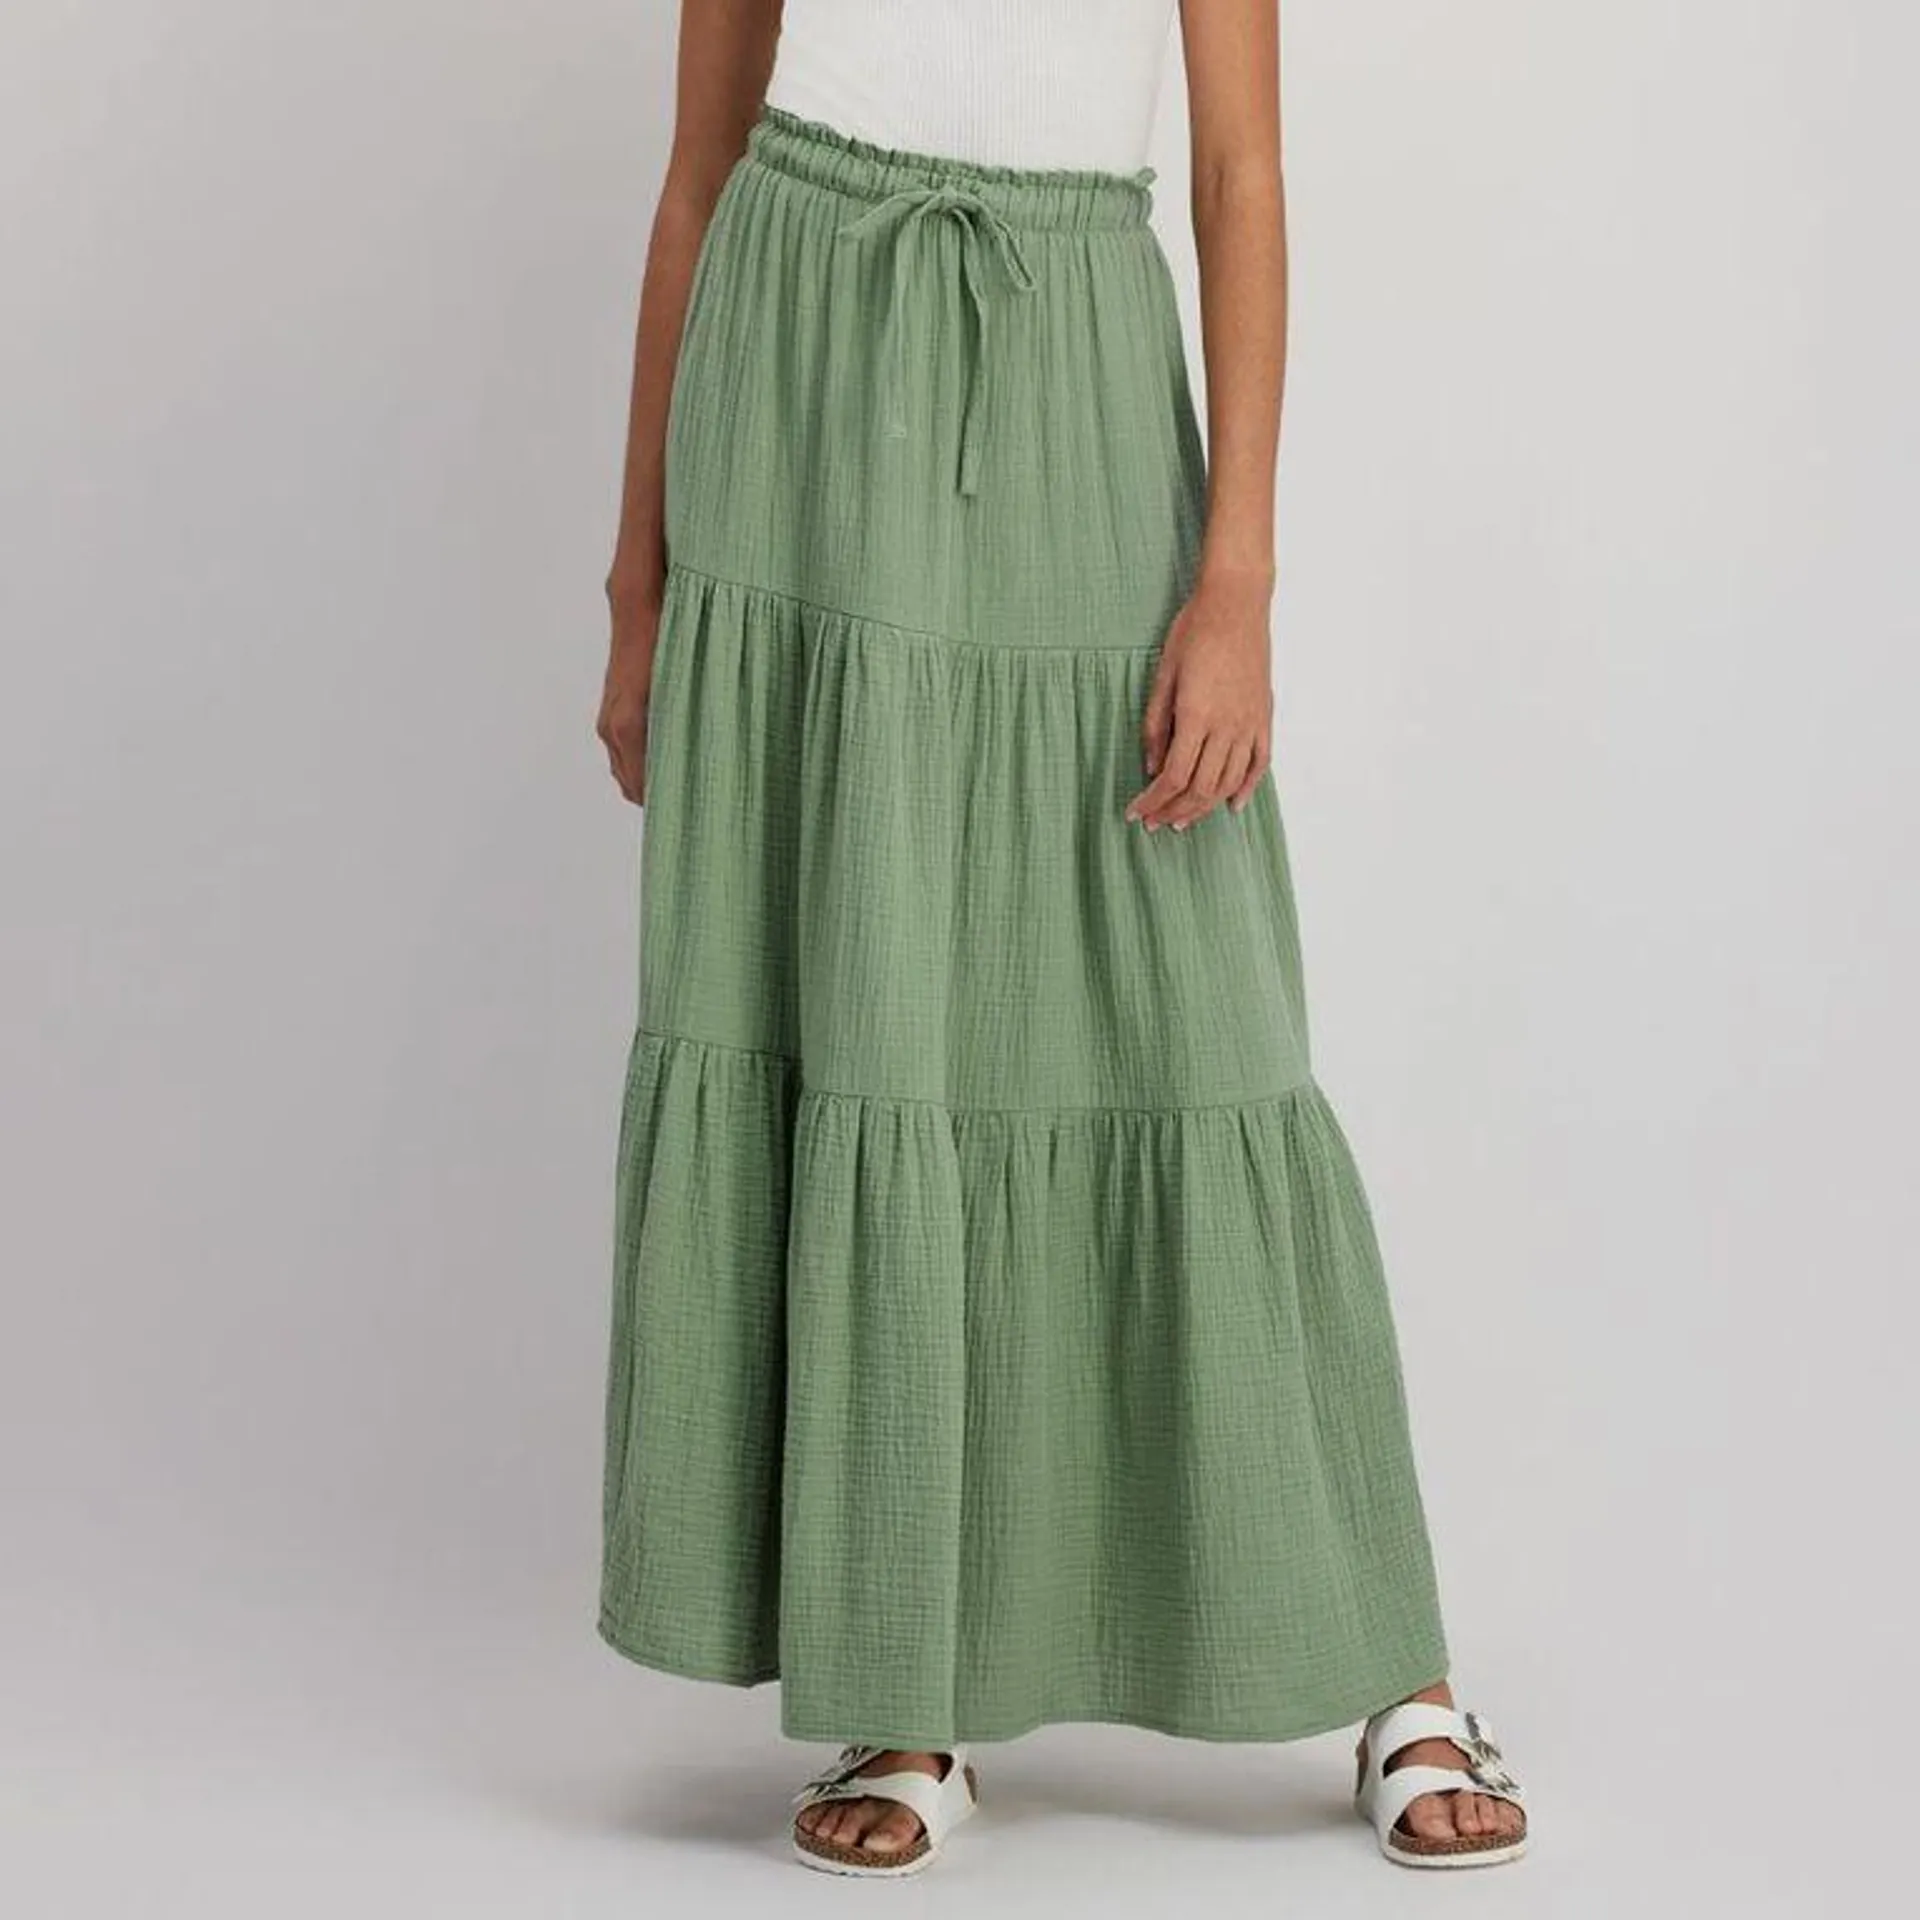 H&H Women's Cotton Tiered Muslin Maxi Skirt